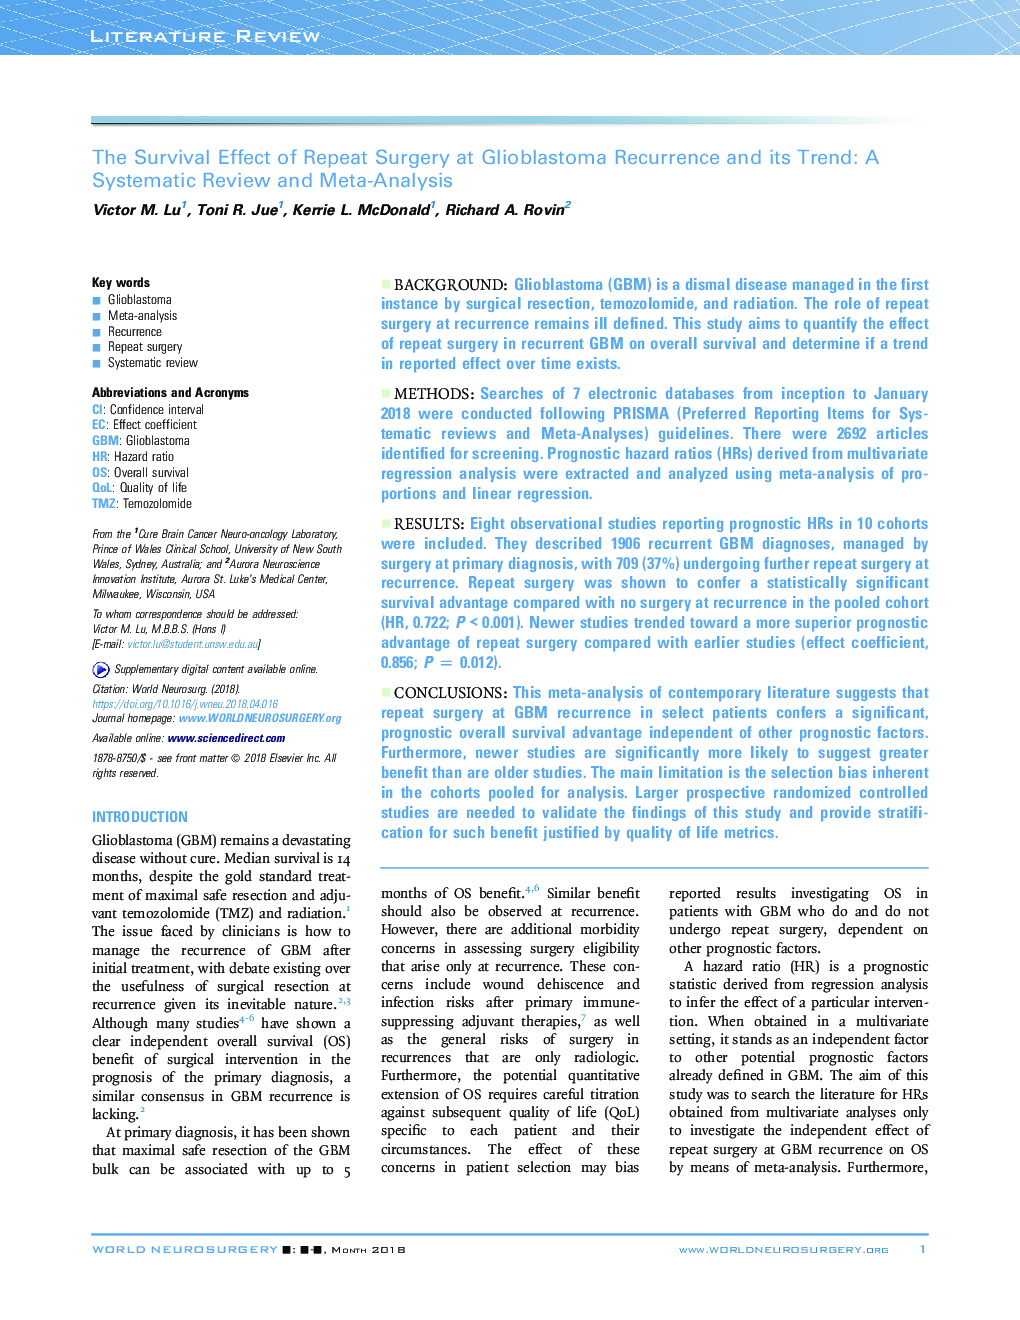 تأثیر بقاء جراحی تکرار در عود گلیوبلاستوما و روند آن: یک بررسی منظم و متاآنالیز 